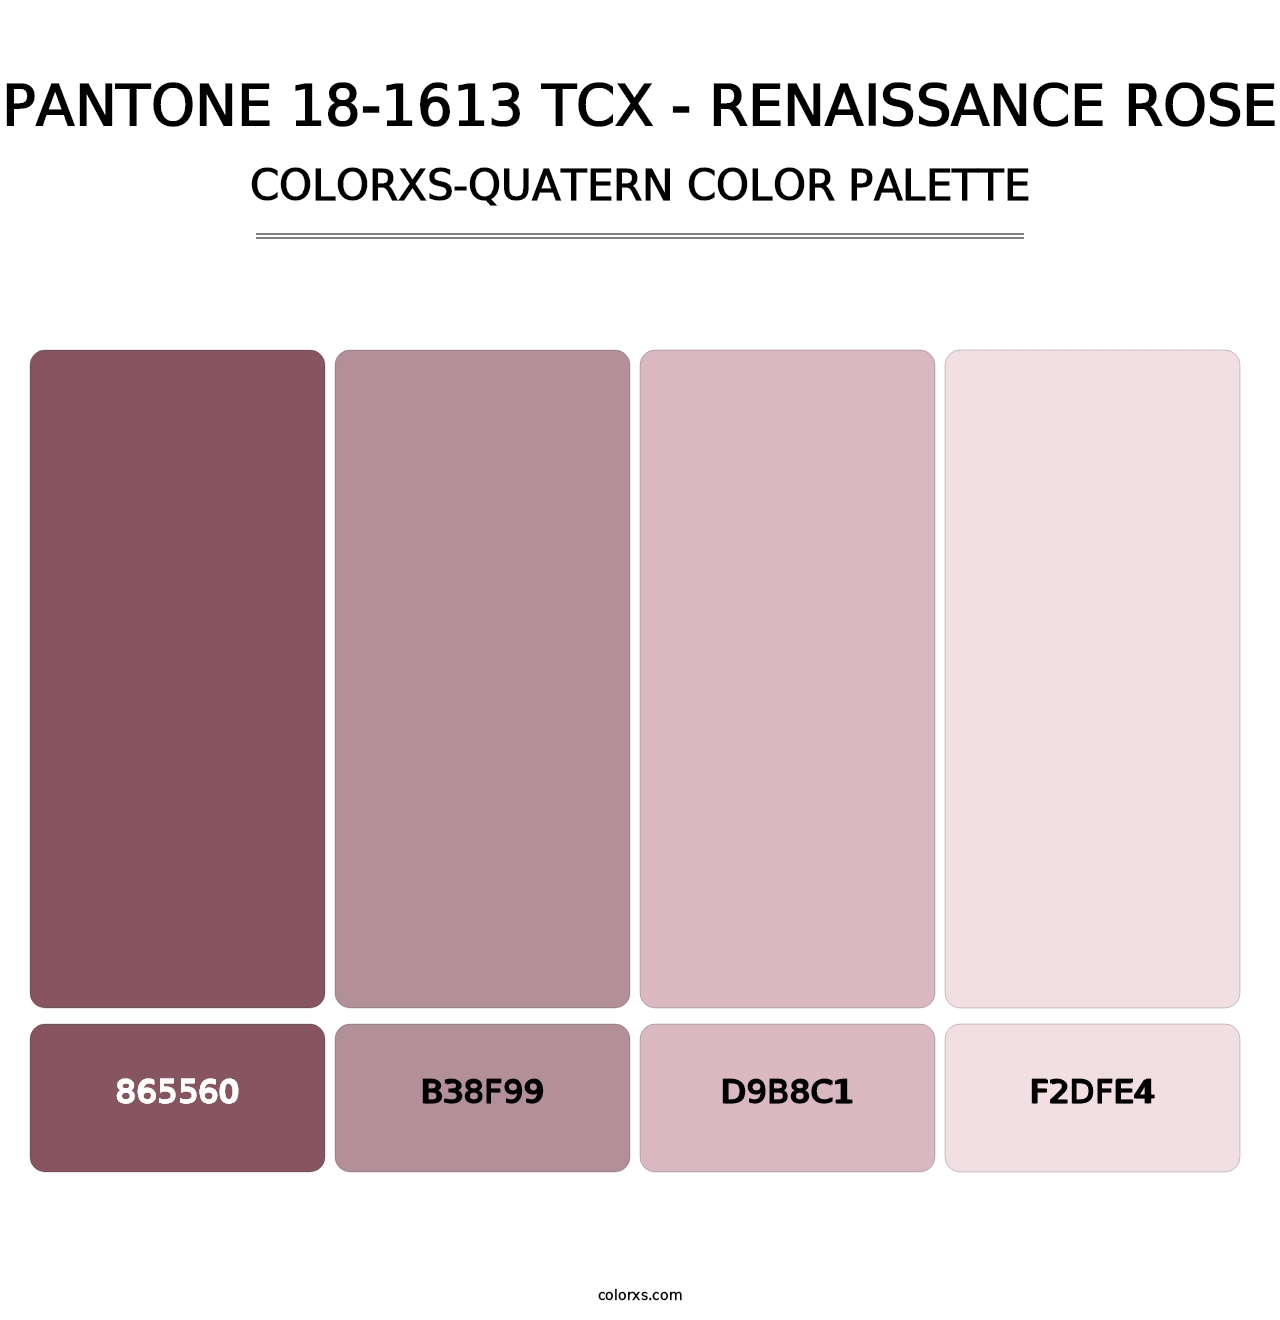 PANTONE 18-1613 TCX - Renaissance Rose - Colorxs Quatern Palette